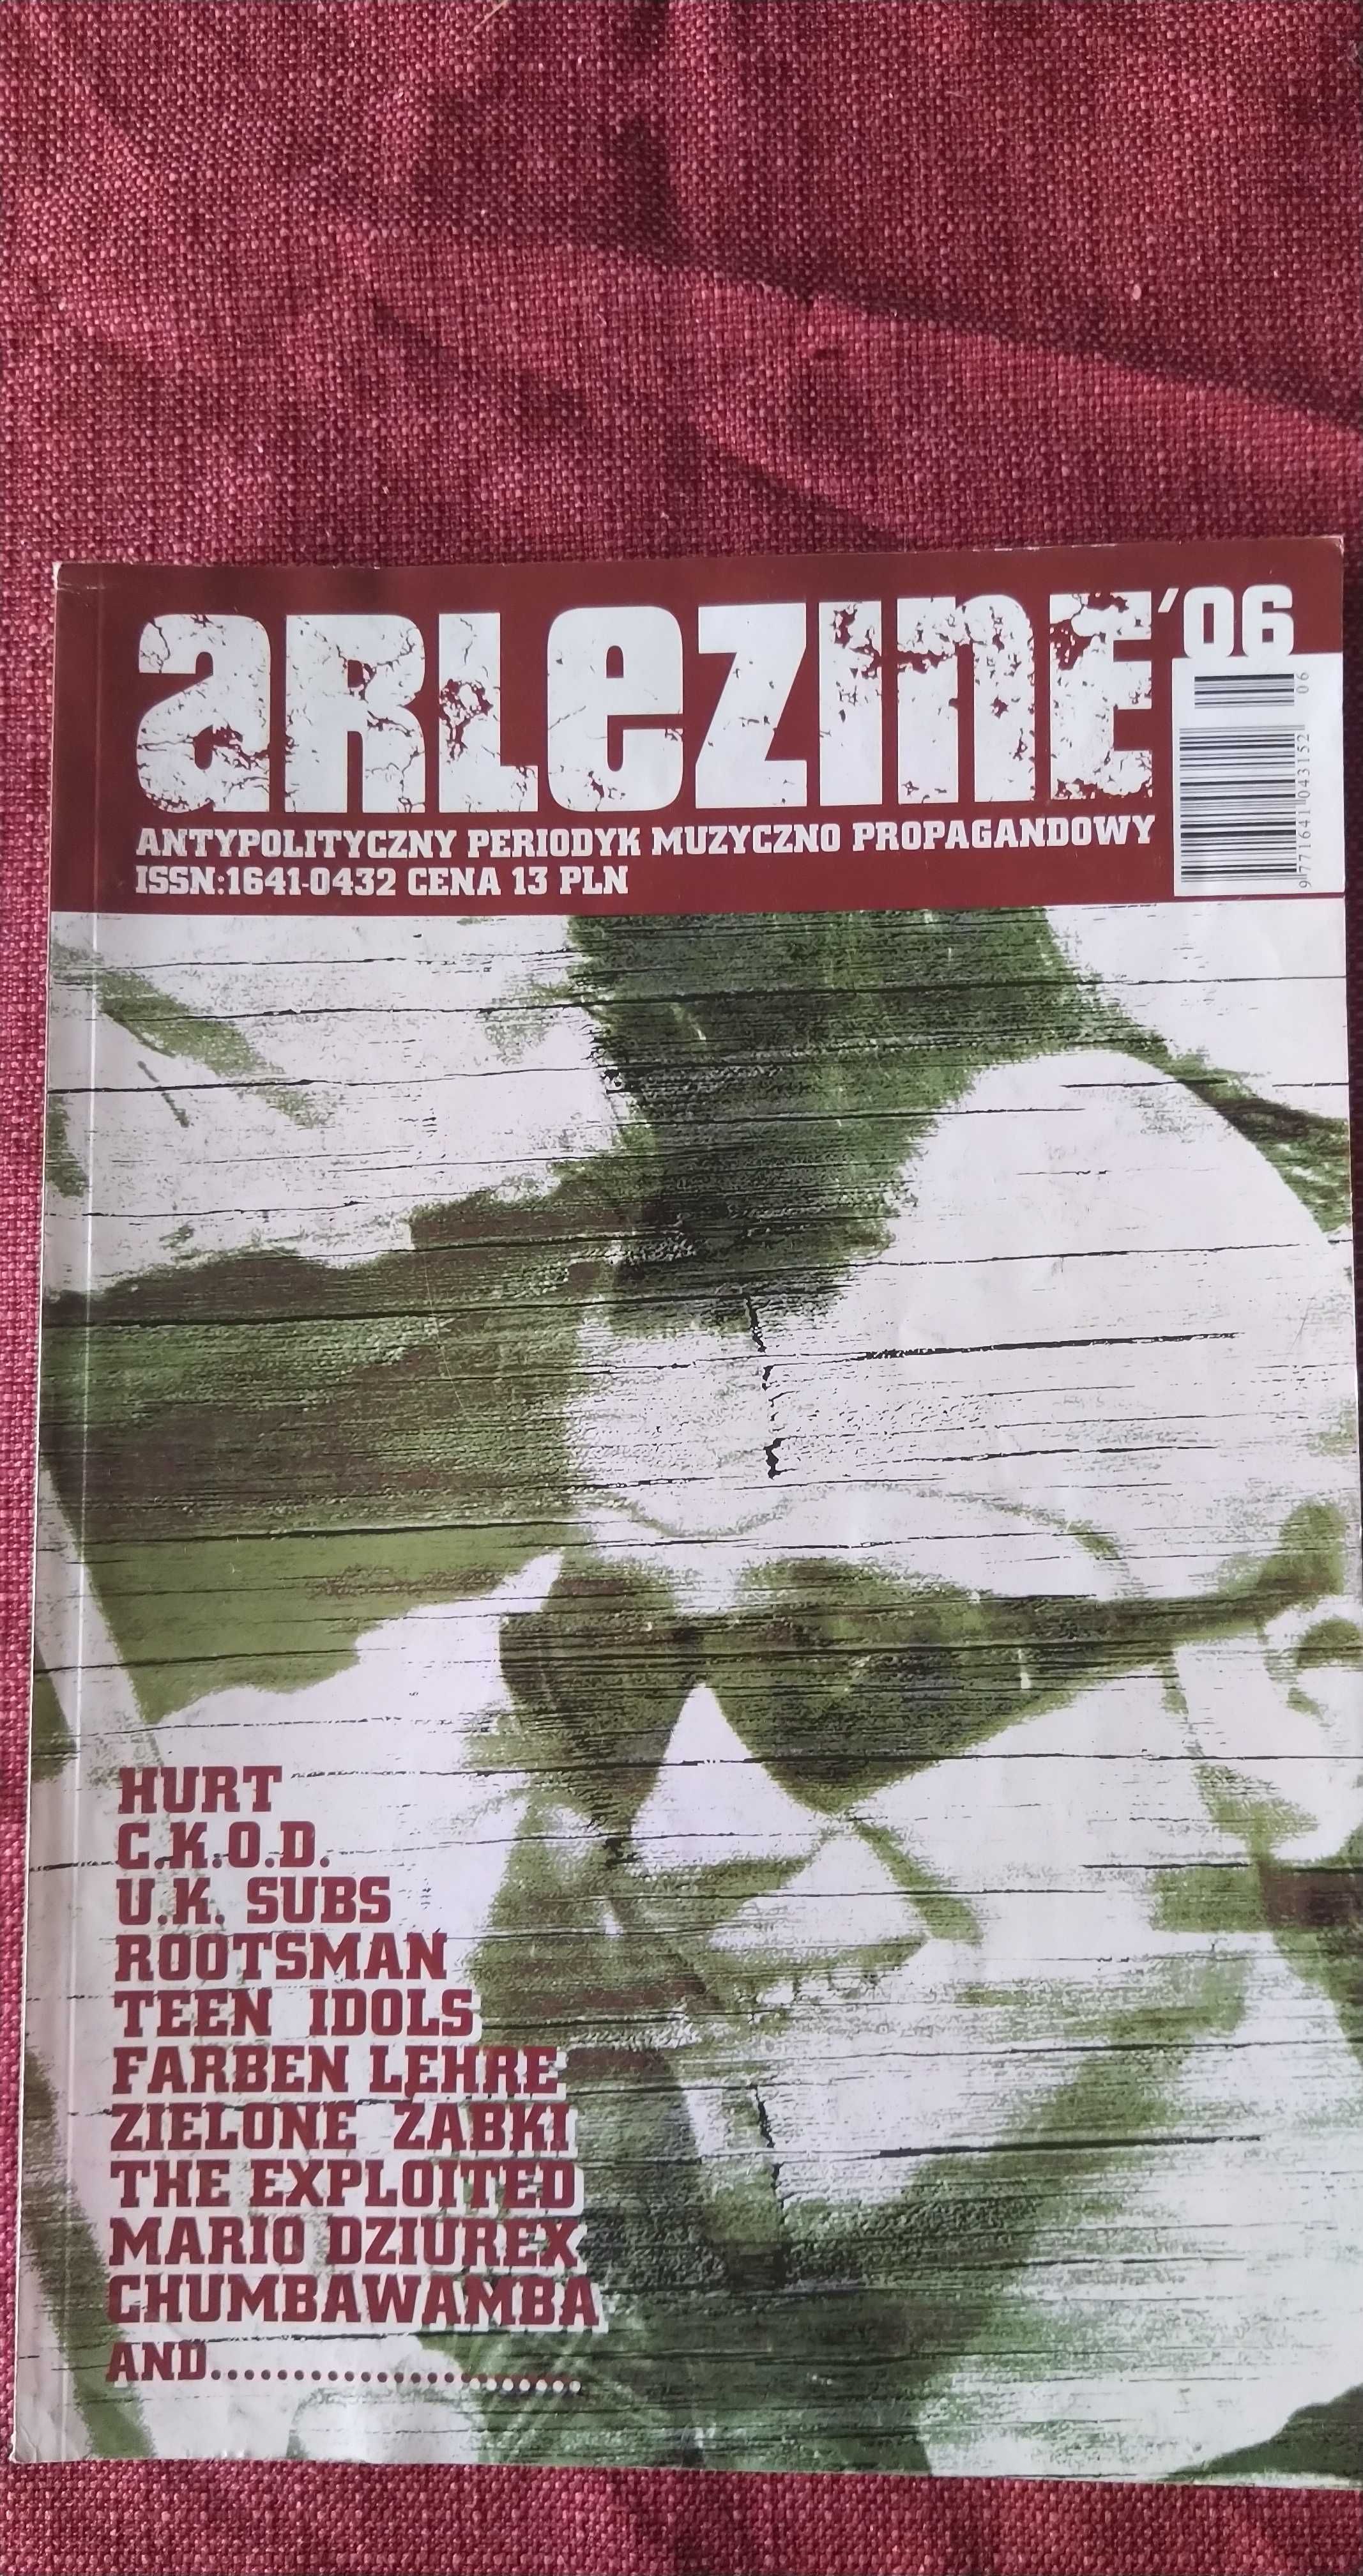 Arlezine '06 zin zine hardcore punk